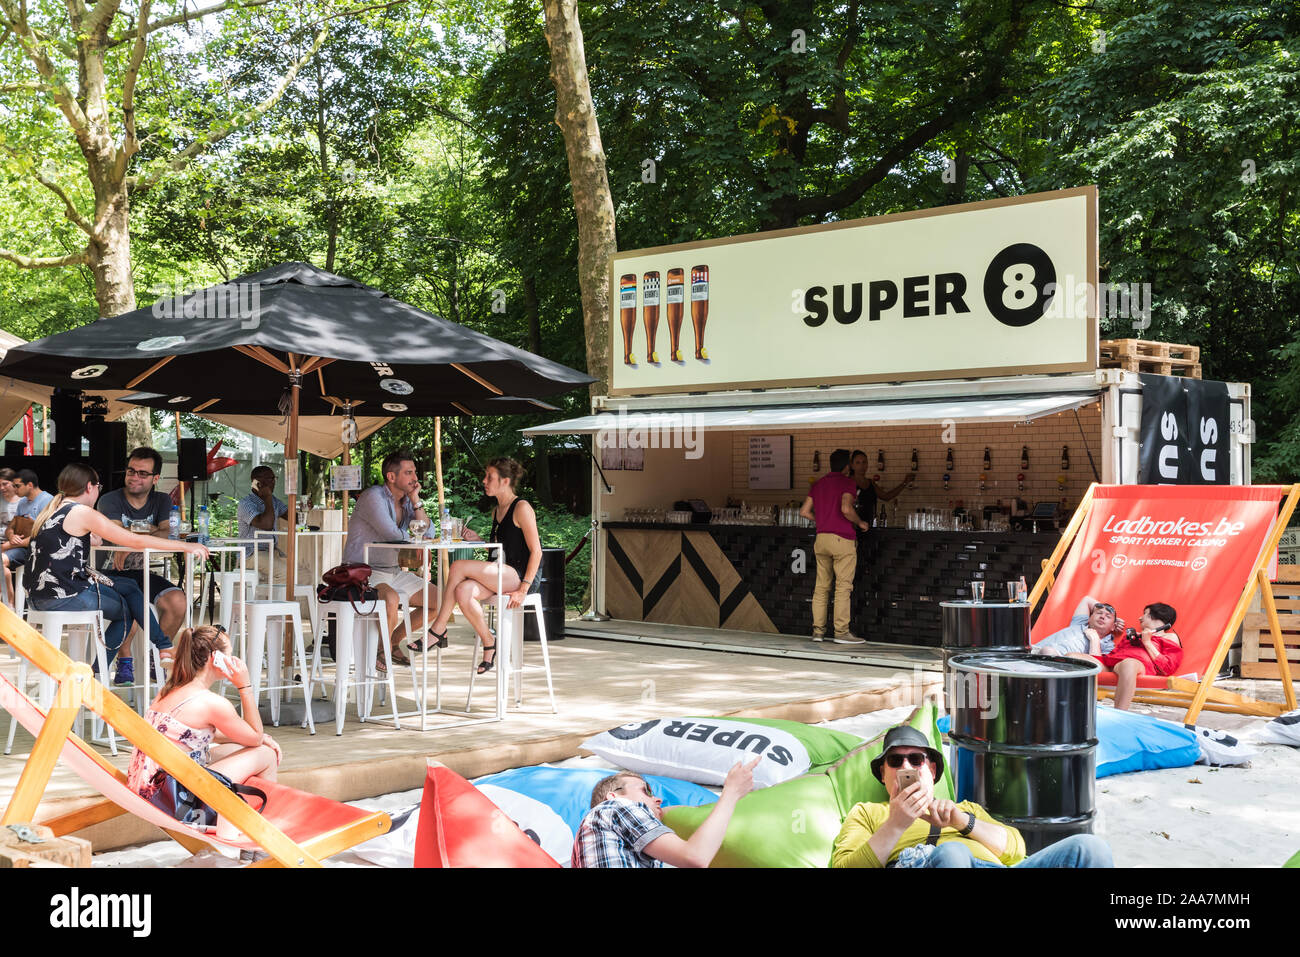 Vieille ville de Bruxelles / Belgique - 0625 : 2019 personnes bénéficiant d'un verre dans un bar pop up Super 8 dans le soleil dans le Parc de Bruxelles - Salle debout sur une chaude Banque D'Images